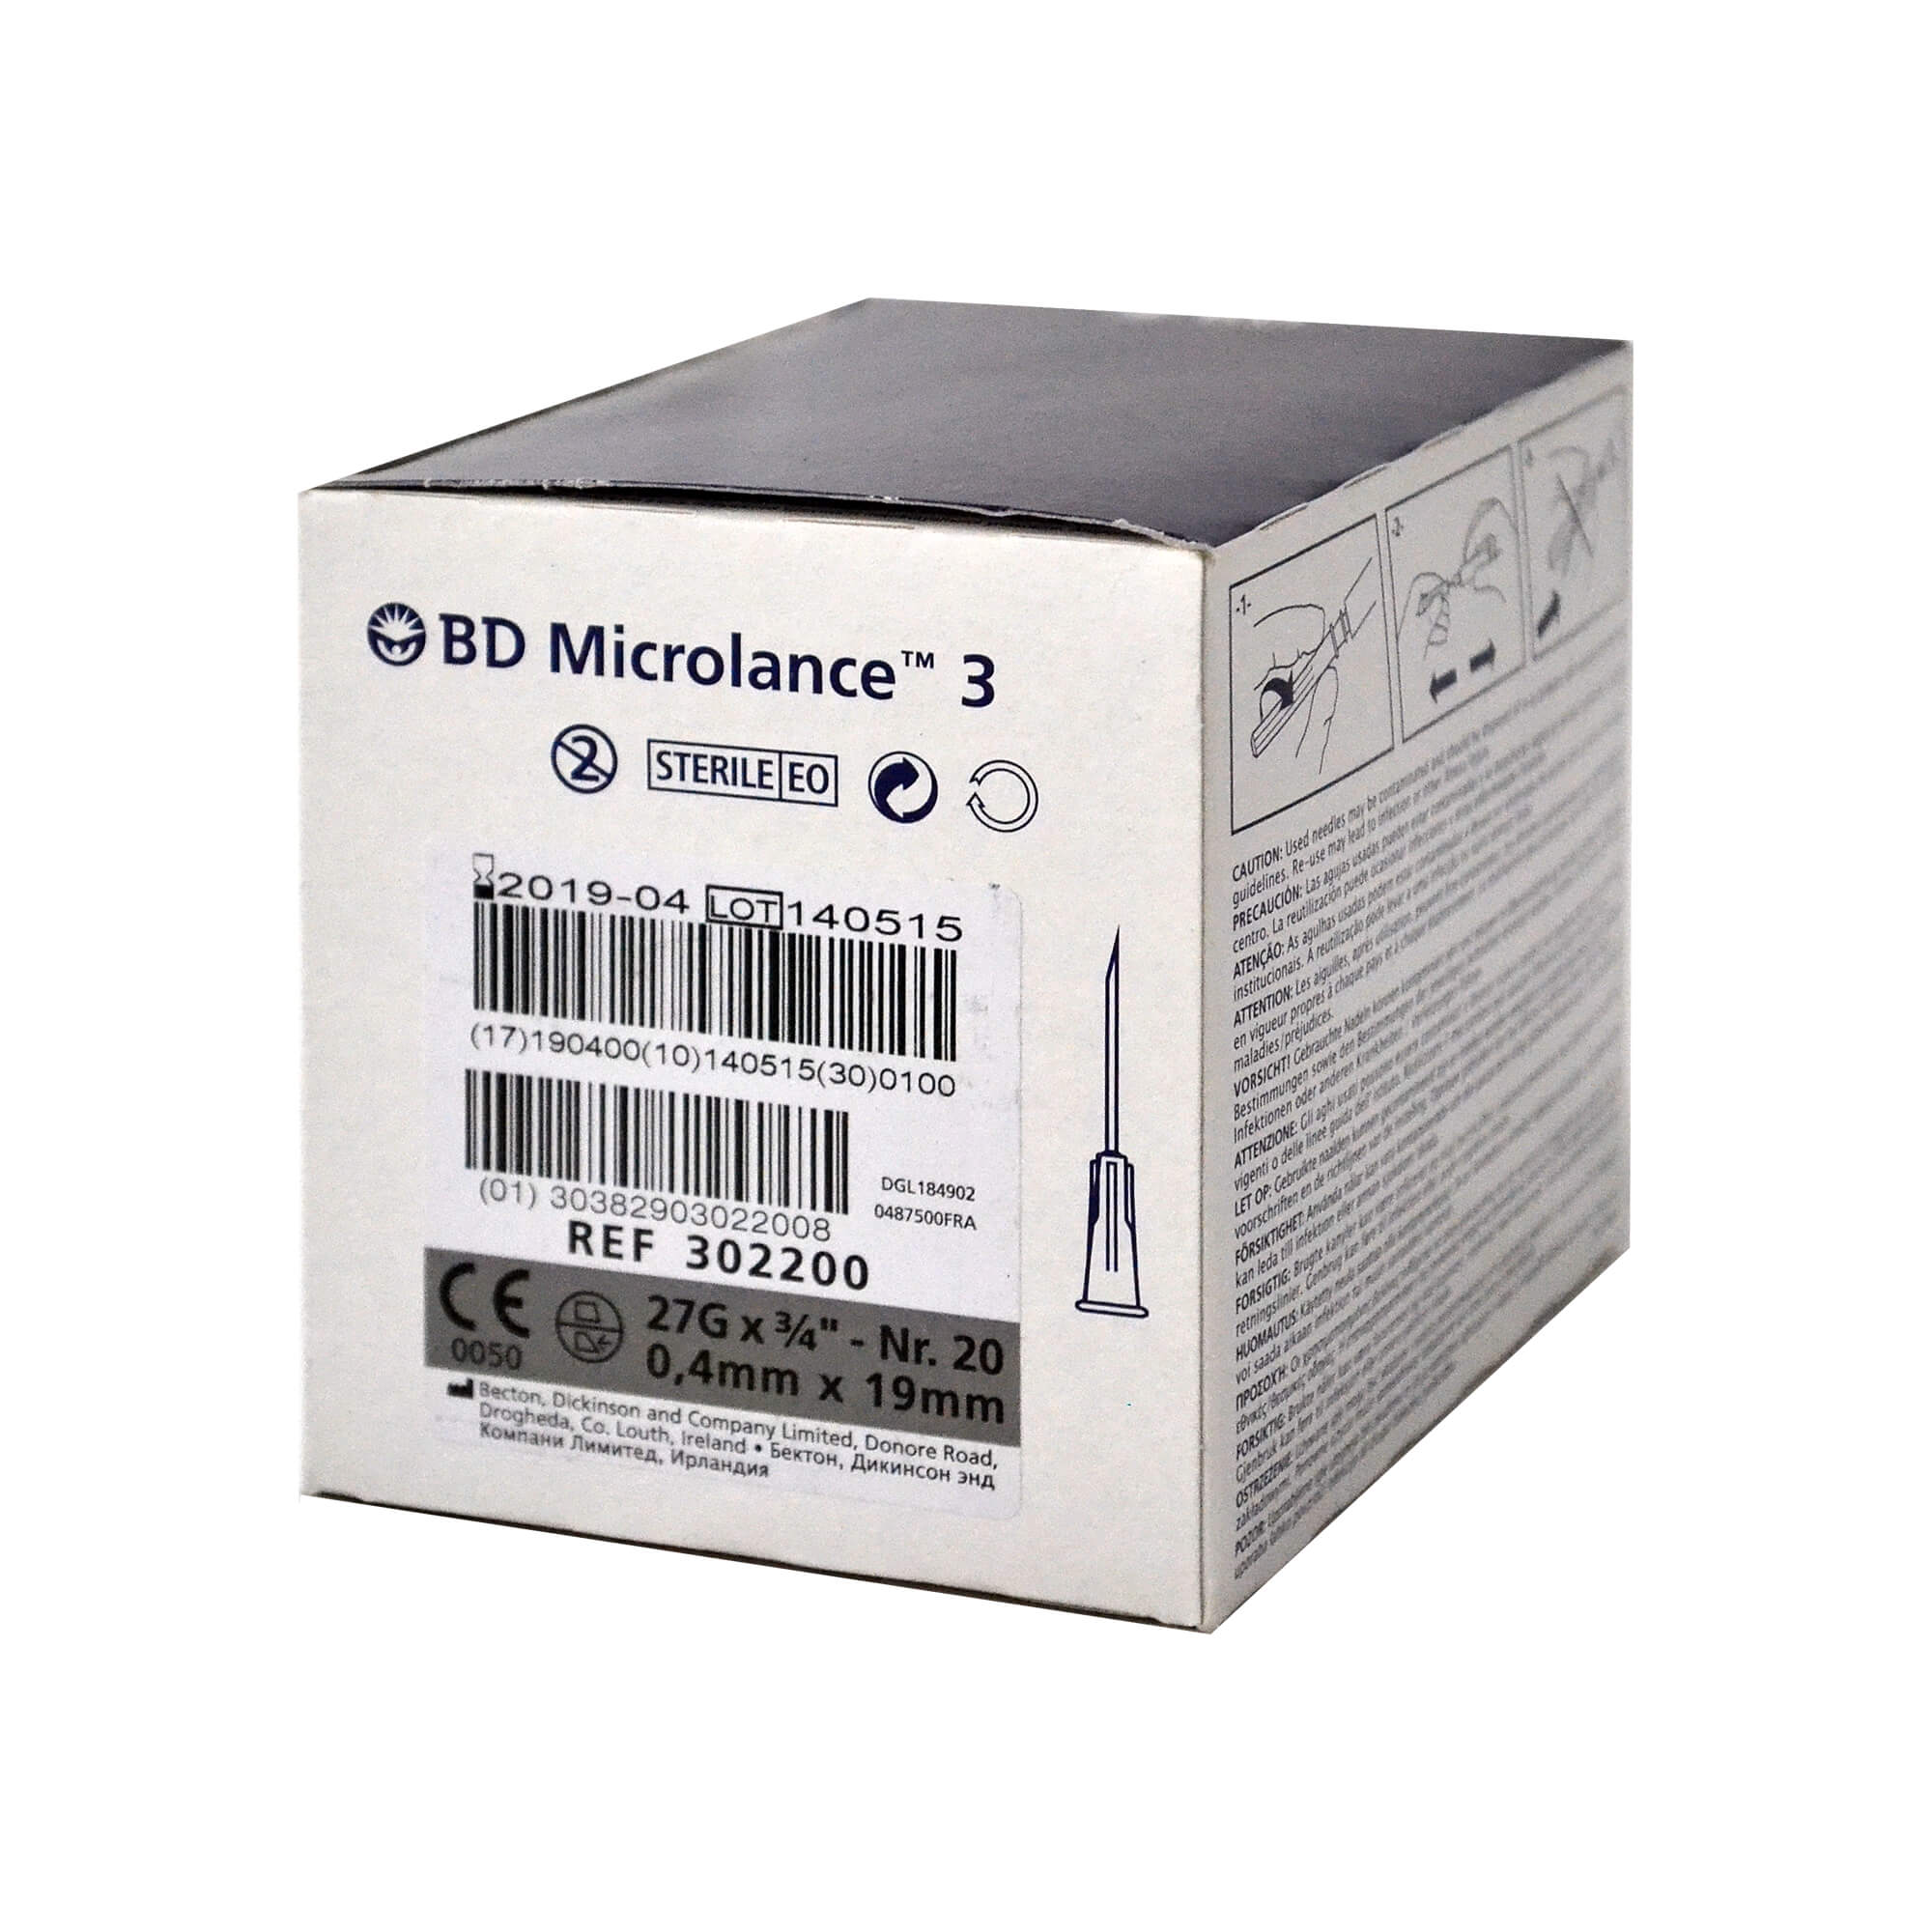 BD Microlance 3 Kanüle, 27 G x 3/4", Nr. 20, 0,4 mm x 19 mm.